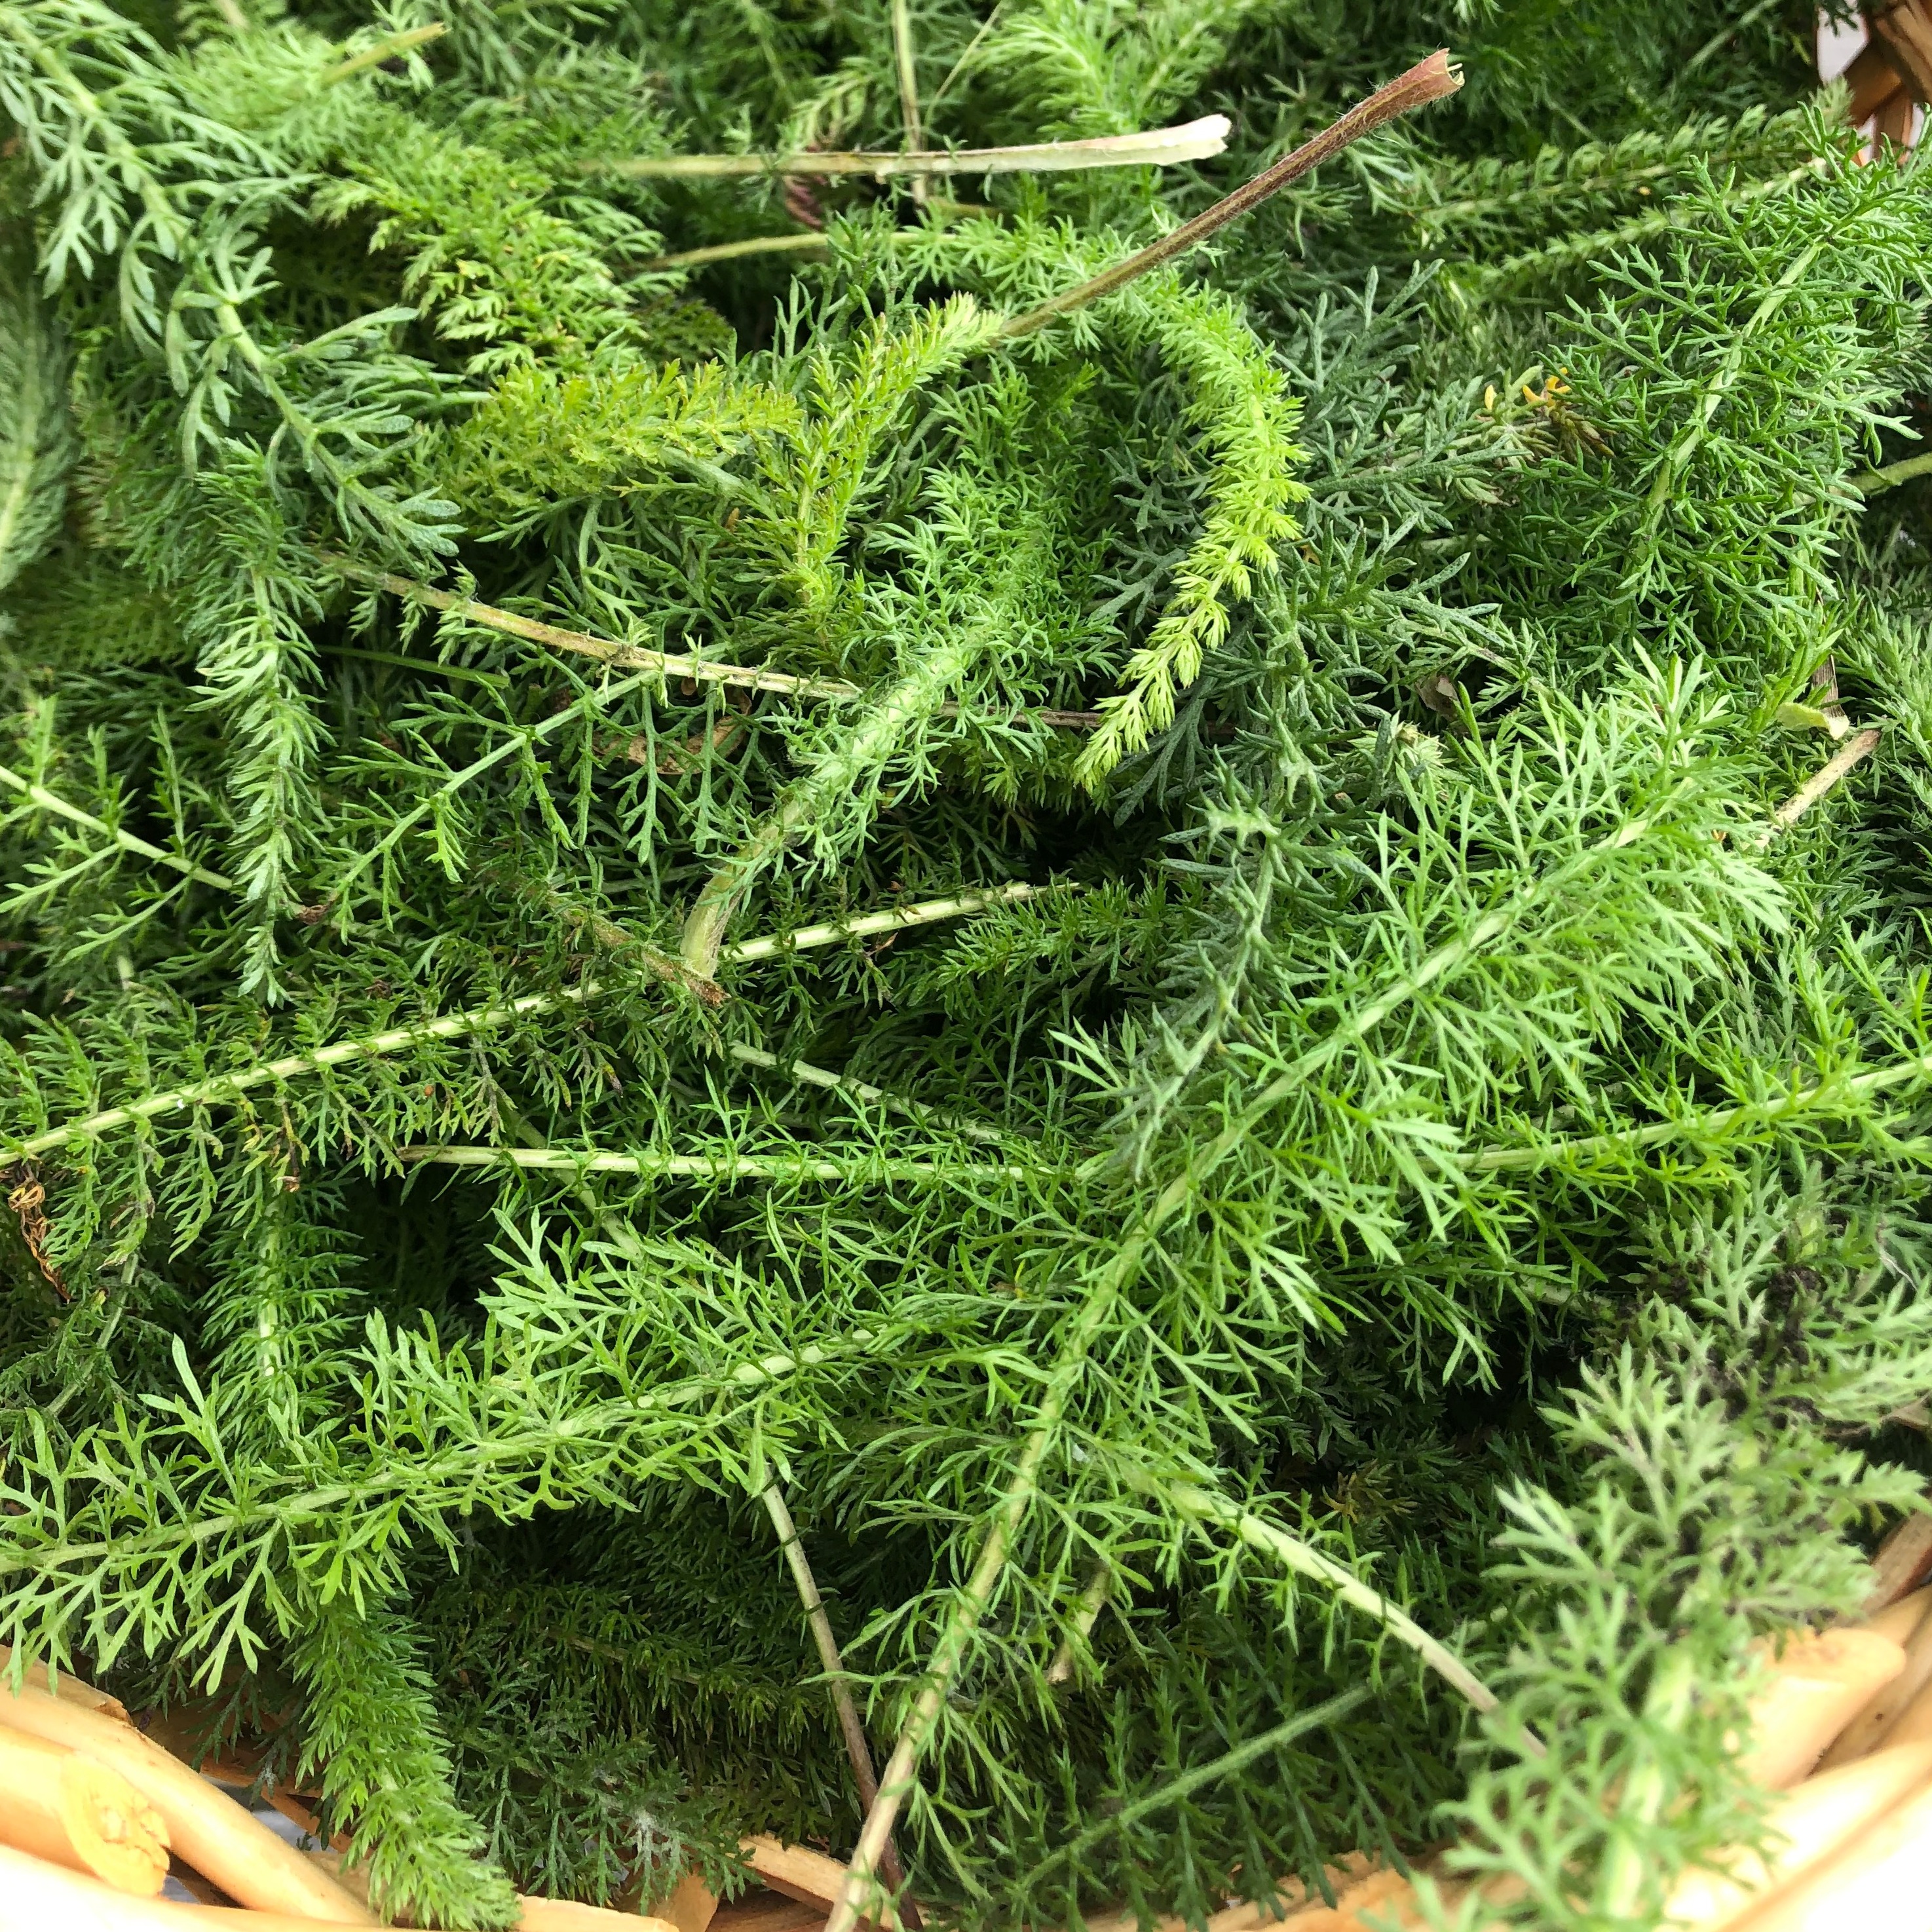 wild yarrow leaves in a basket